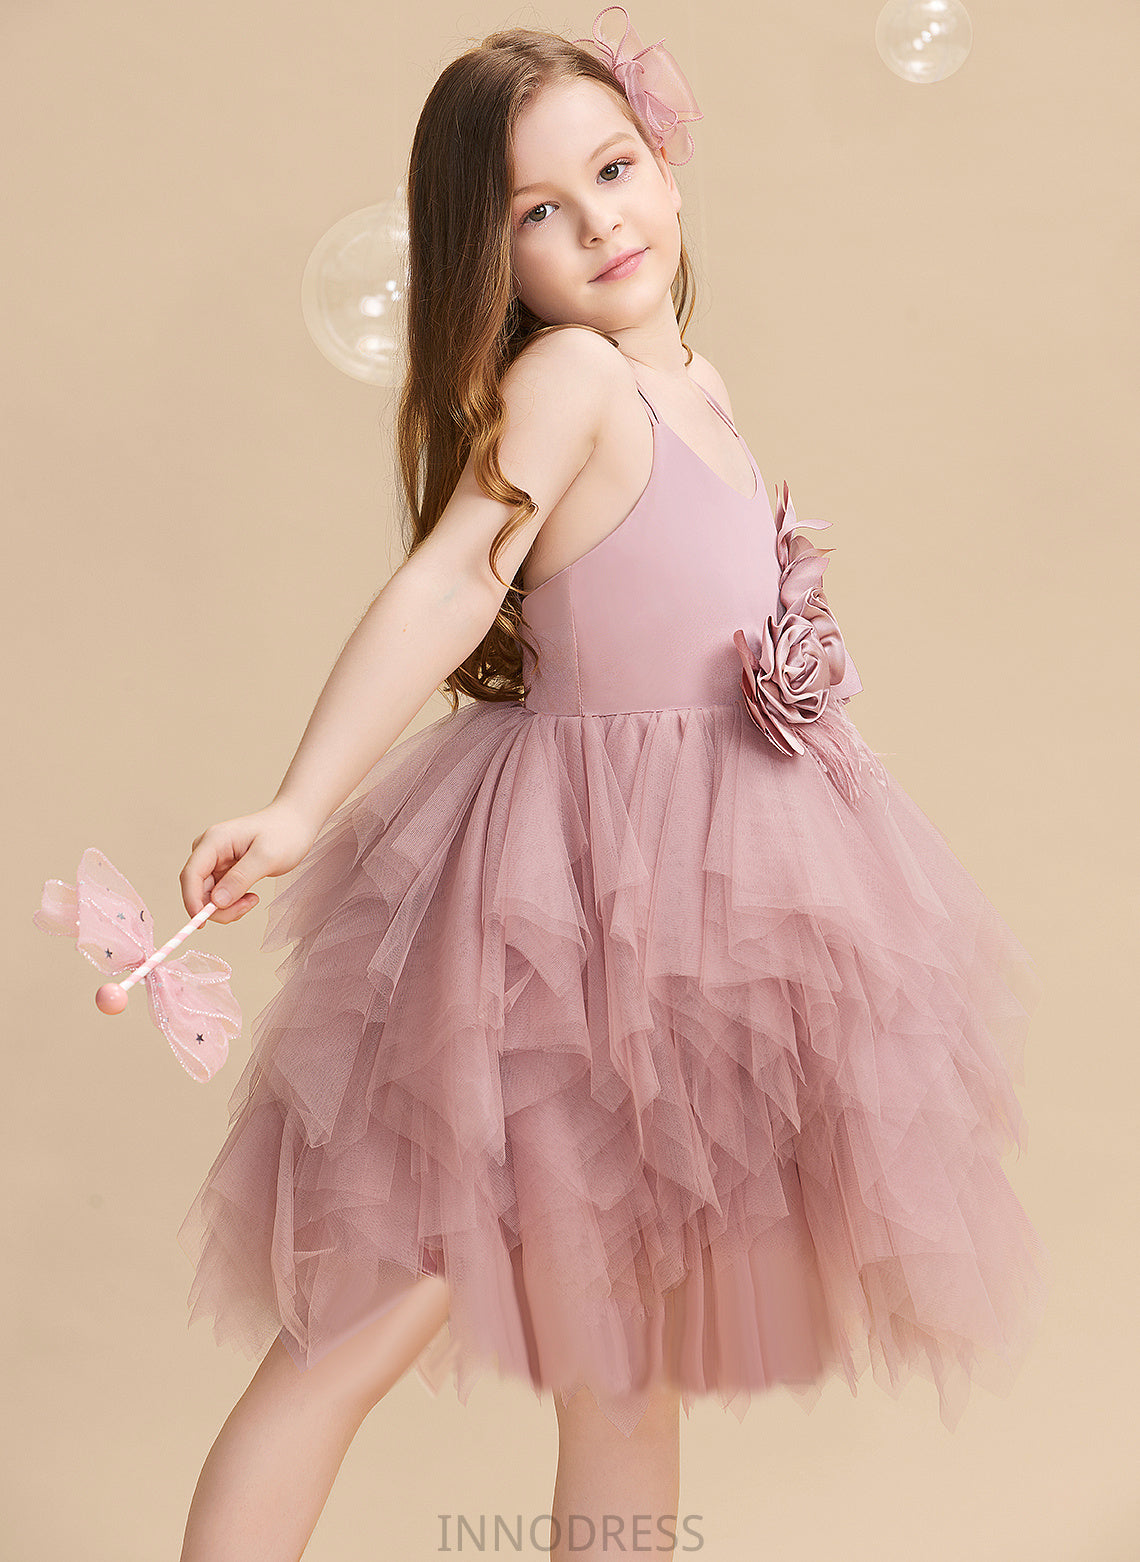 - Knee-length With Flower Josephine Flower Girl Dresses Sleeveless Feather/Flower(s) Girl Neck Dress Scalloped Ball-Gown/Princess Tulle